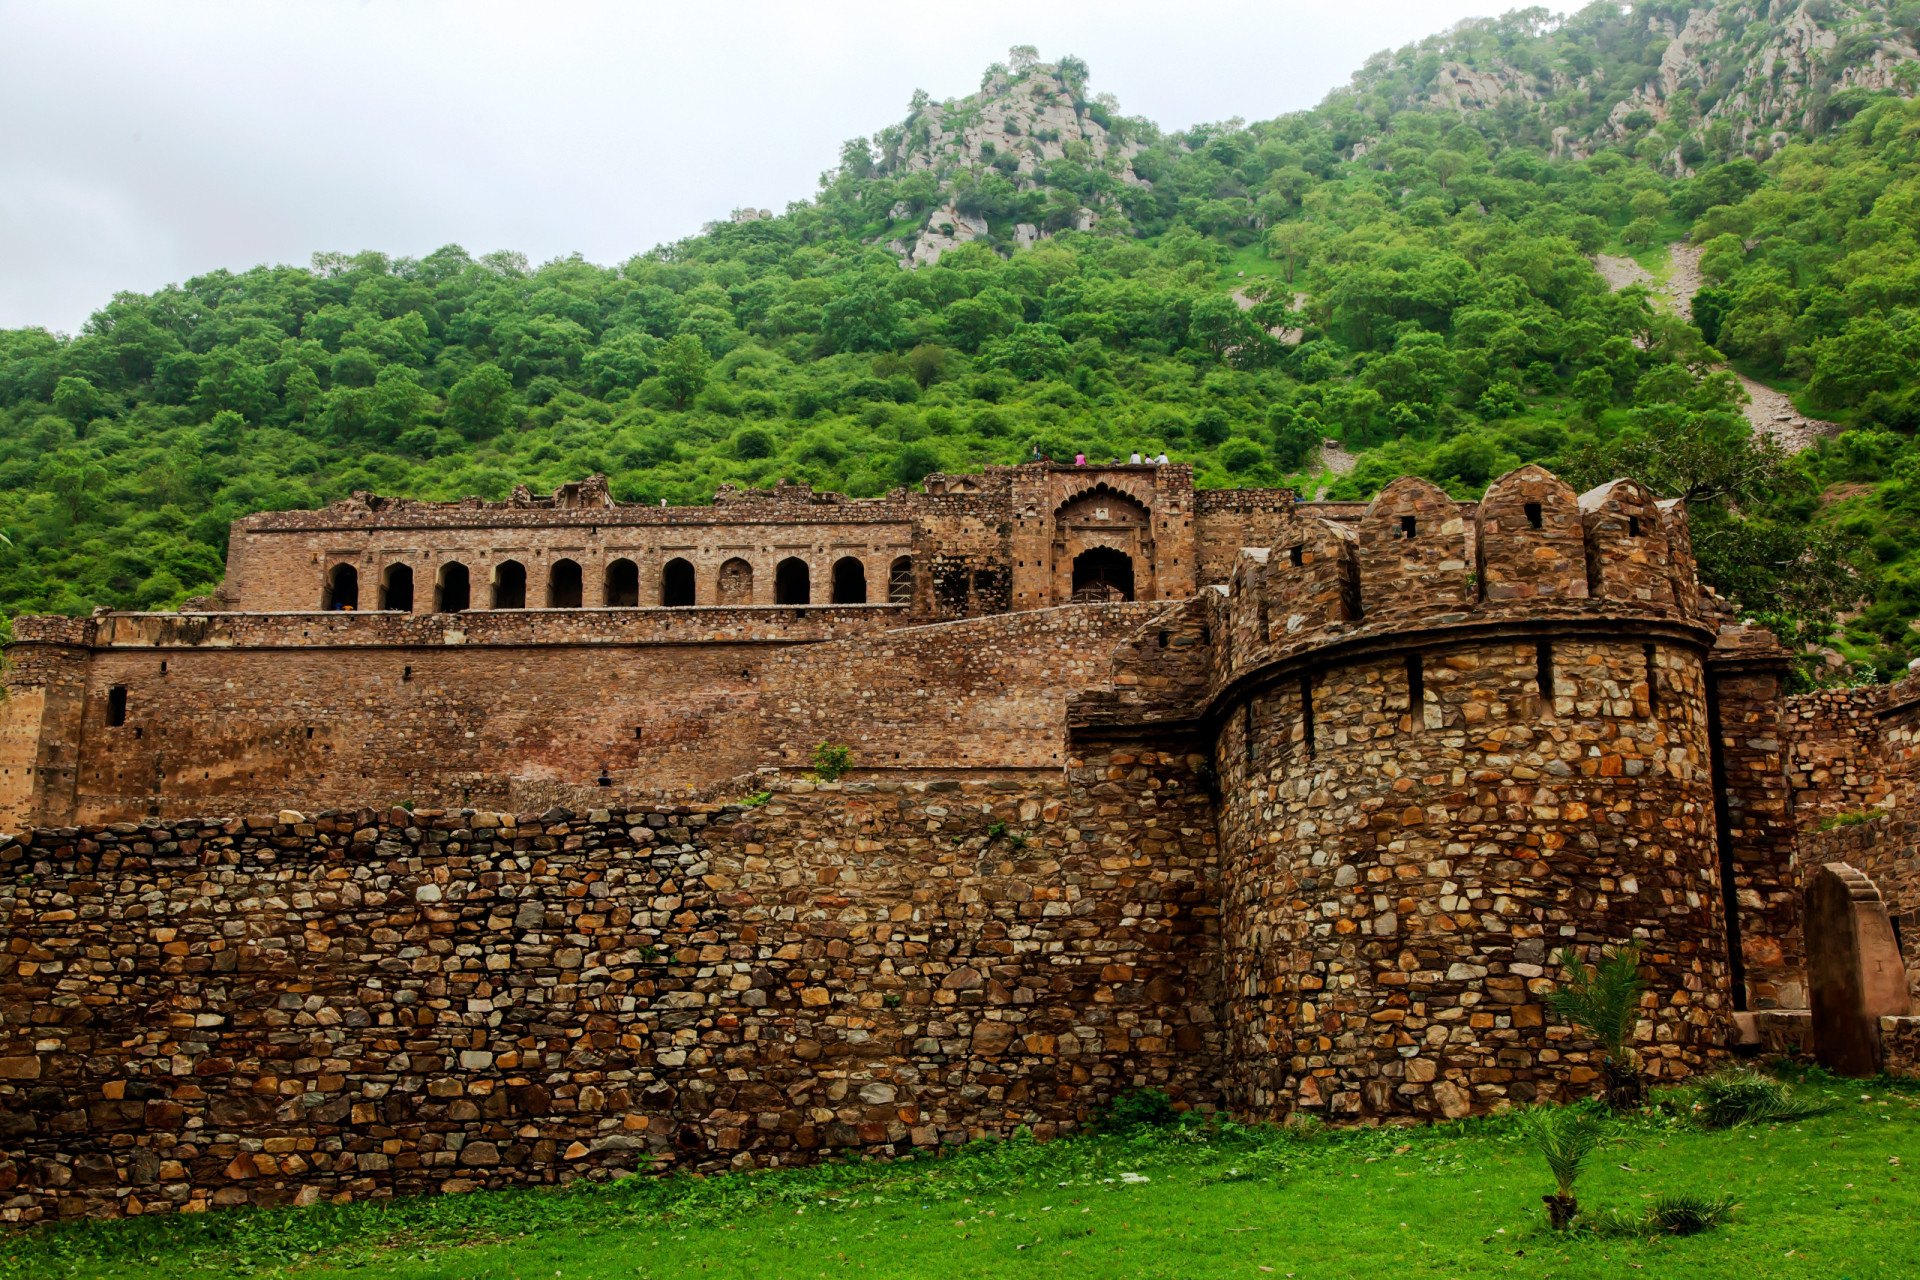 <p>Bhangarh n'est pas un lieu pour les peureux... Ce fort du 16e siècle construit au Rajasthan serait hanté, maudit par un prêtre adepte de la magie noire !</p>